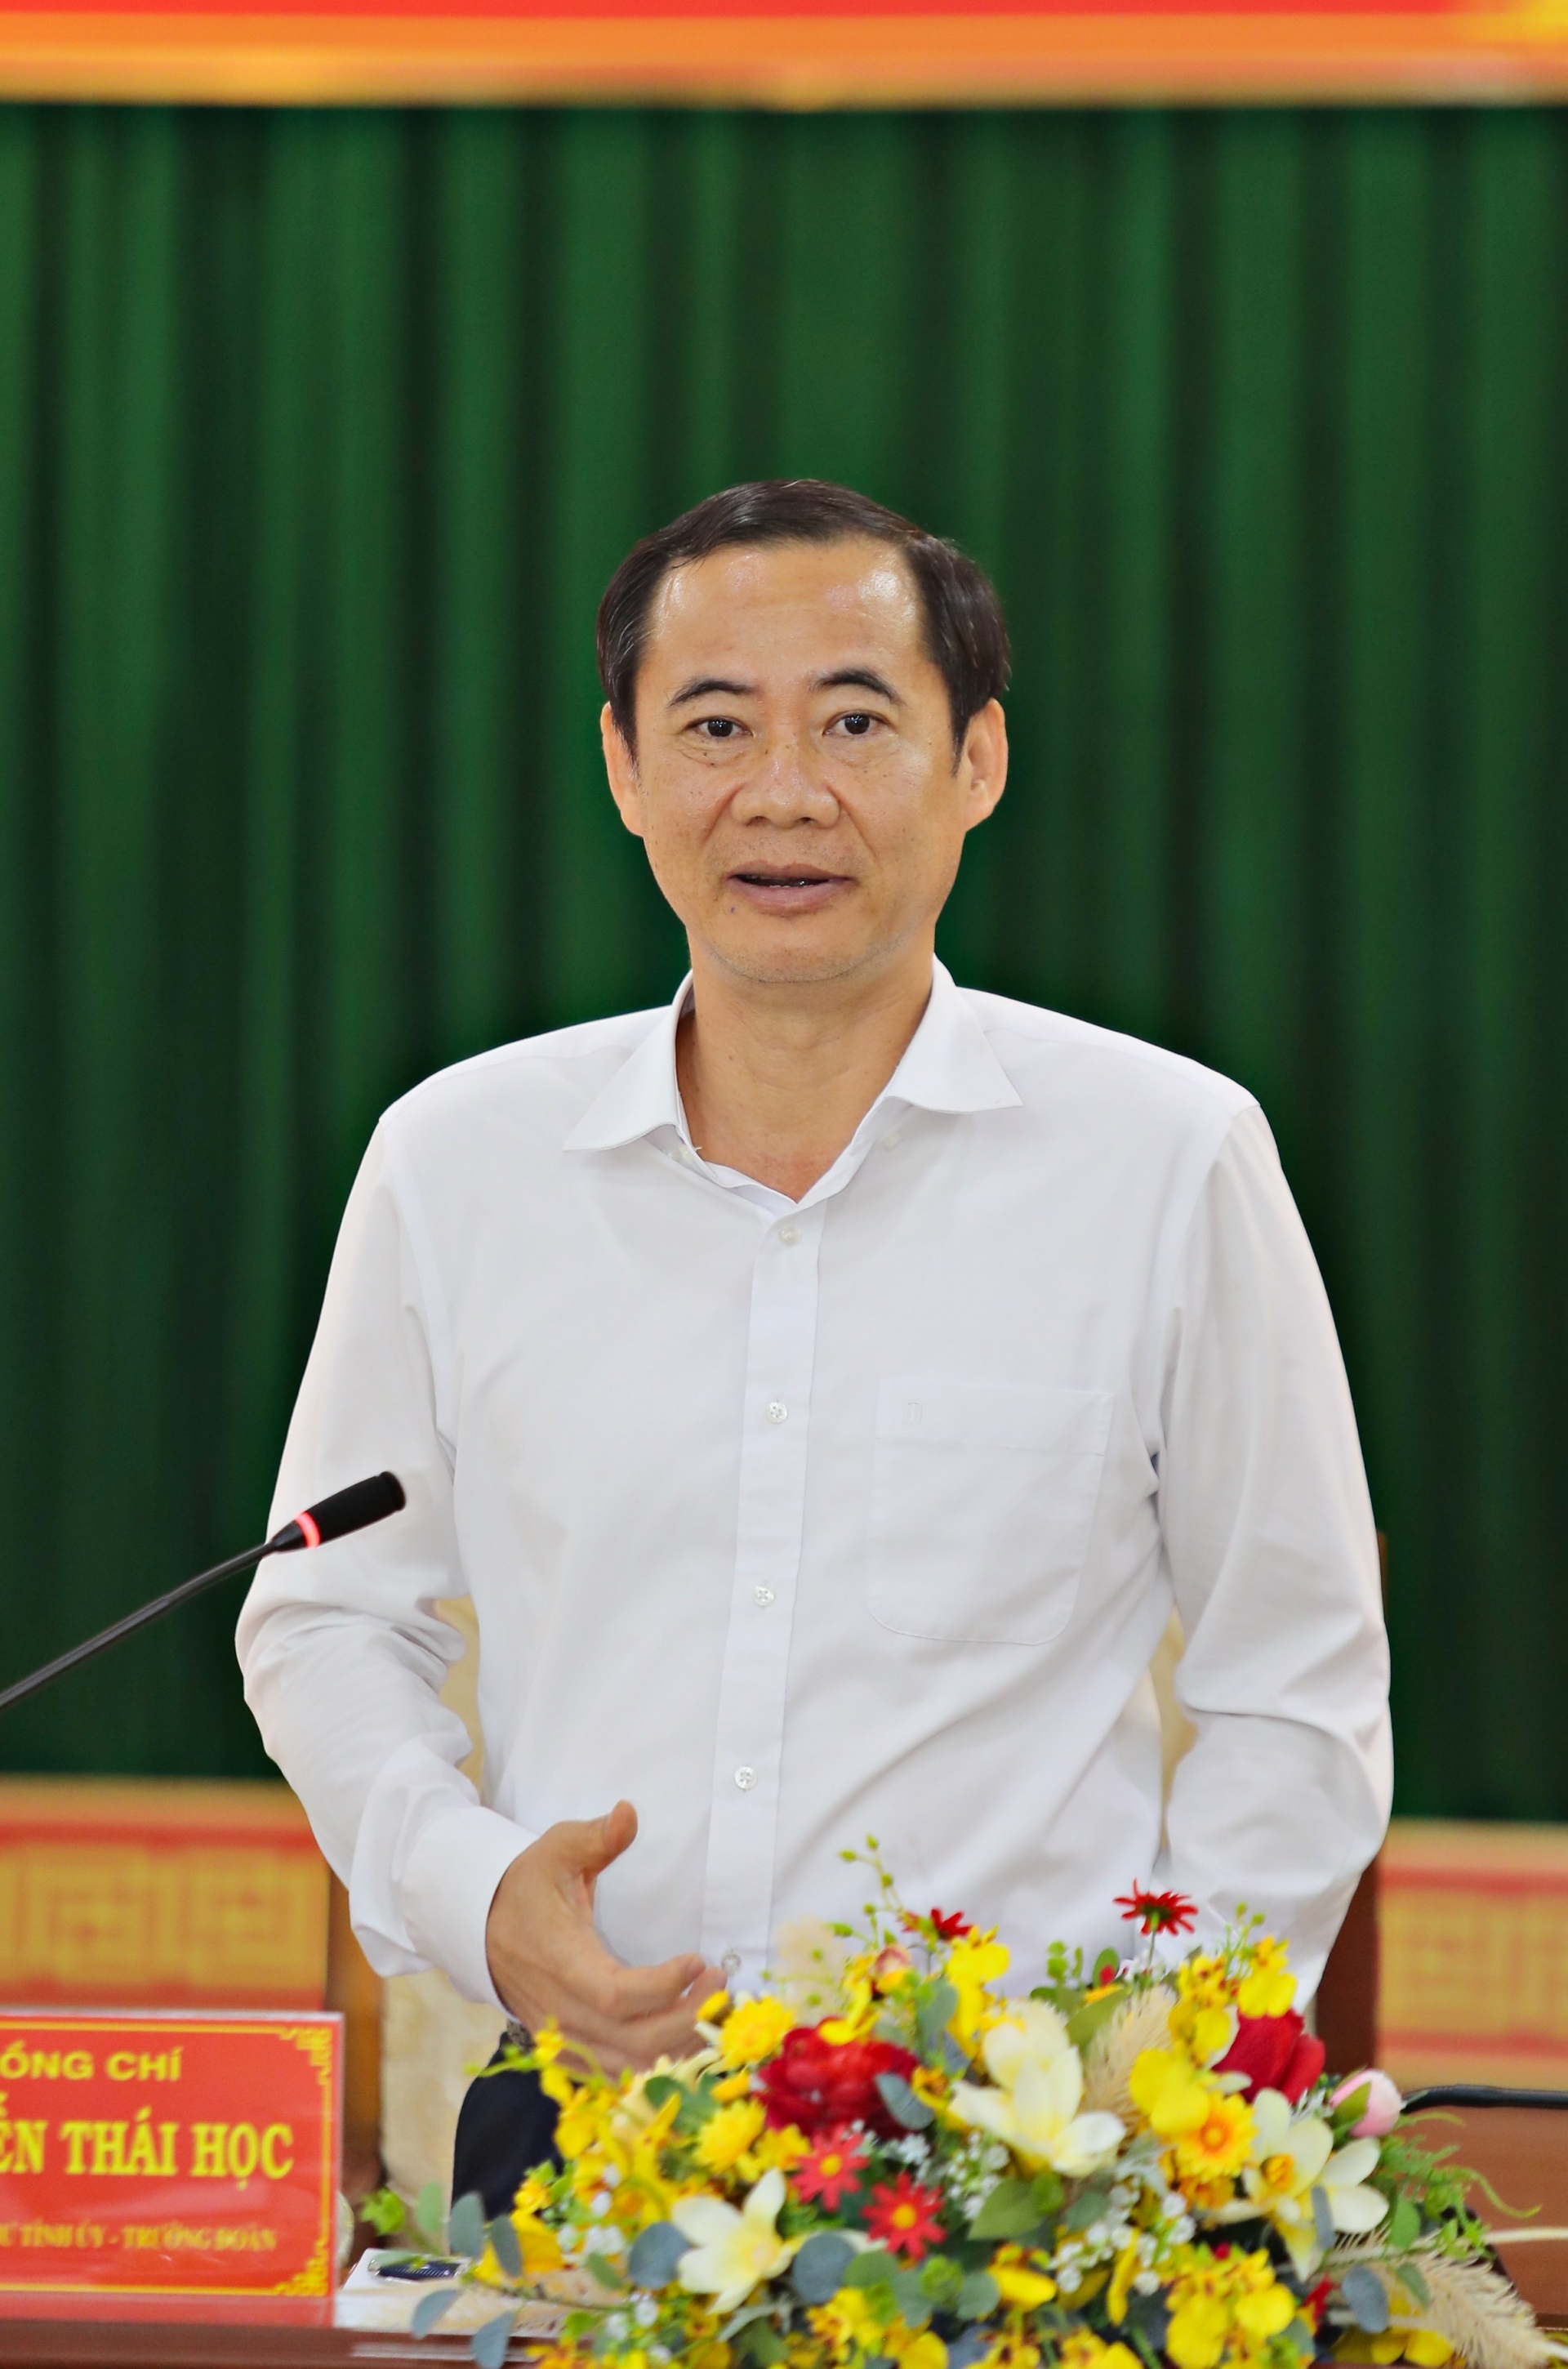 Đồng chí Nguyễn Thái Học, Quyền Bí thư Tỉnh uỷ Lâm Đồng phát biểu tại buổi làm việc